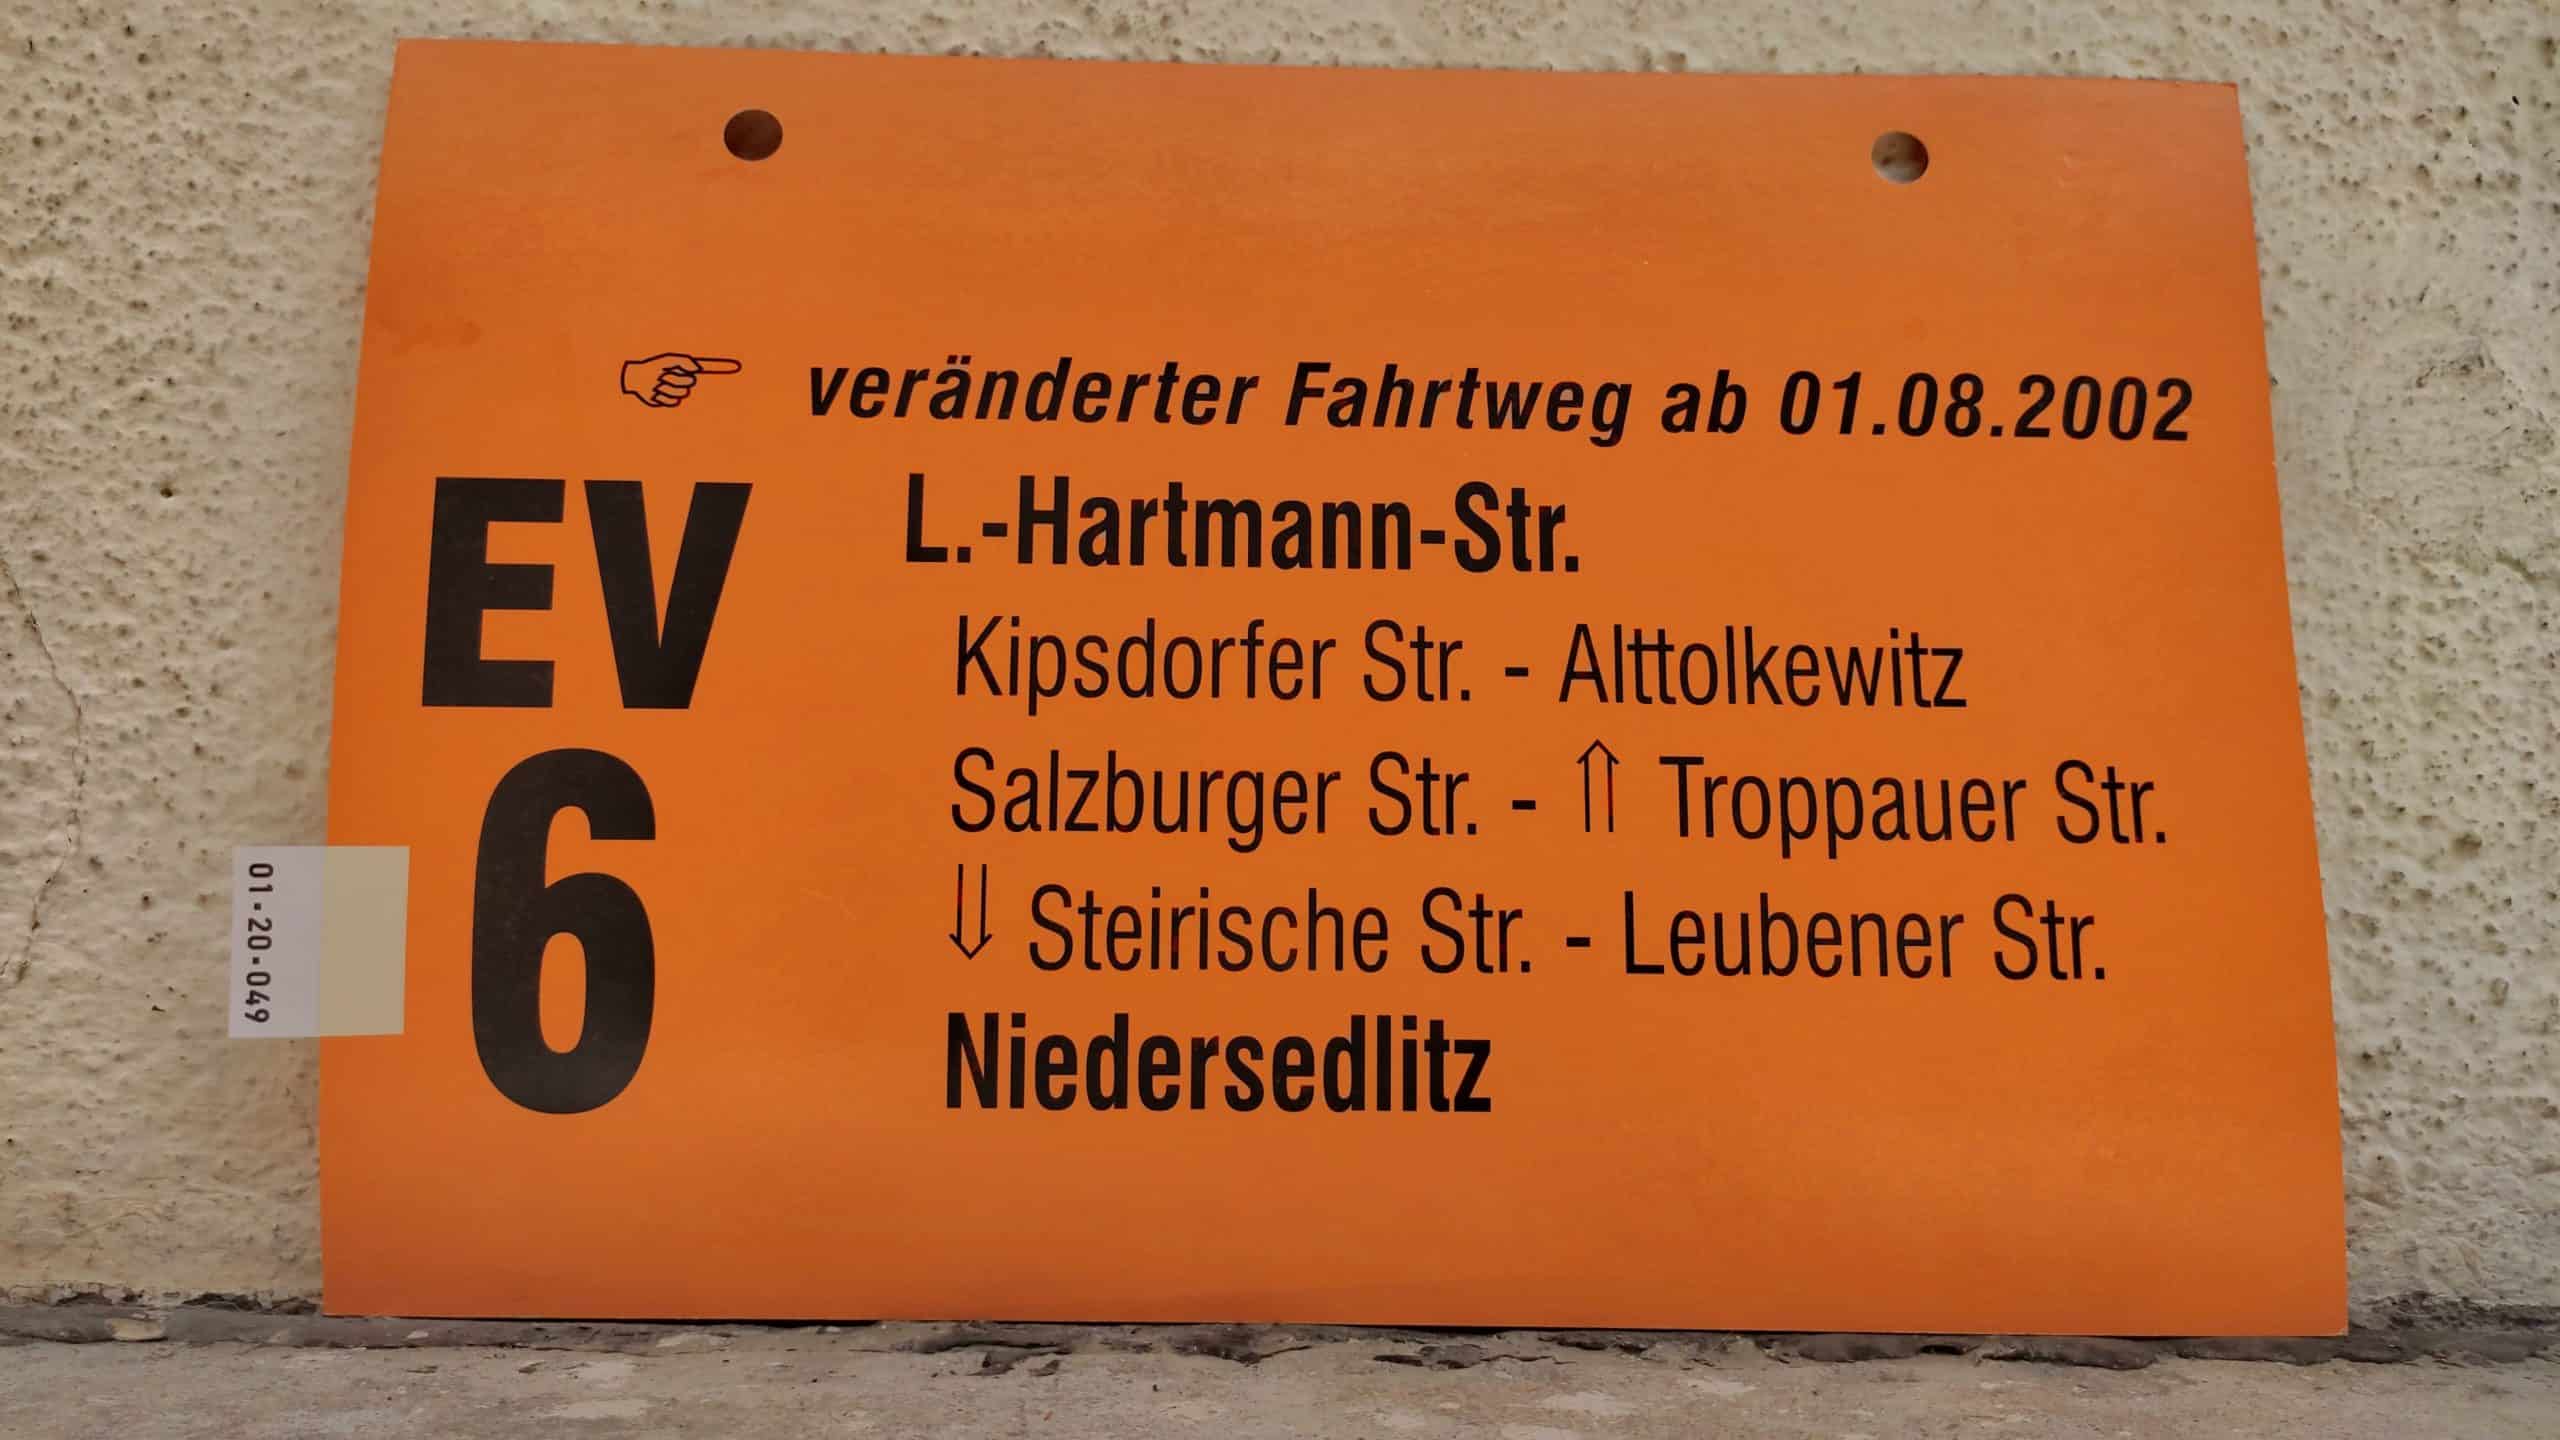 EV 6 [Zeigefinger] veränderter Fahrtweg ab 01.08.2002 L.-Hartmann-Str. – Niedersedlitz